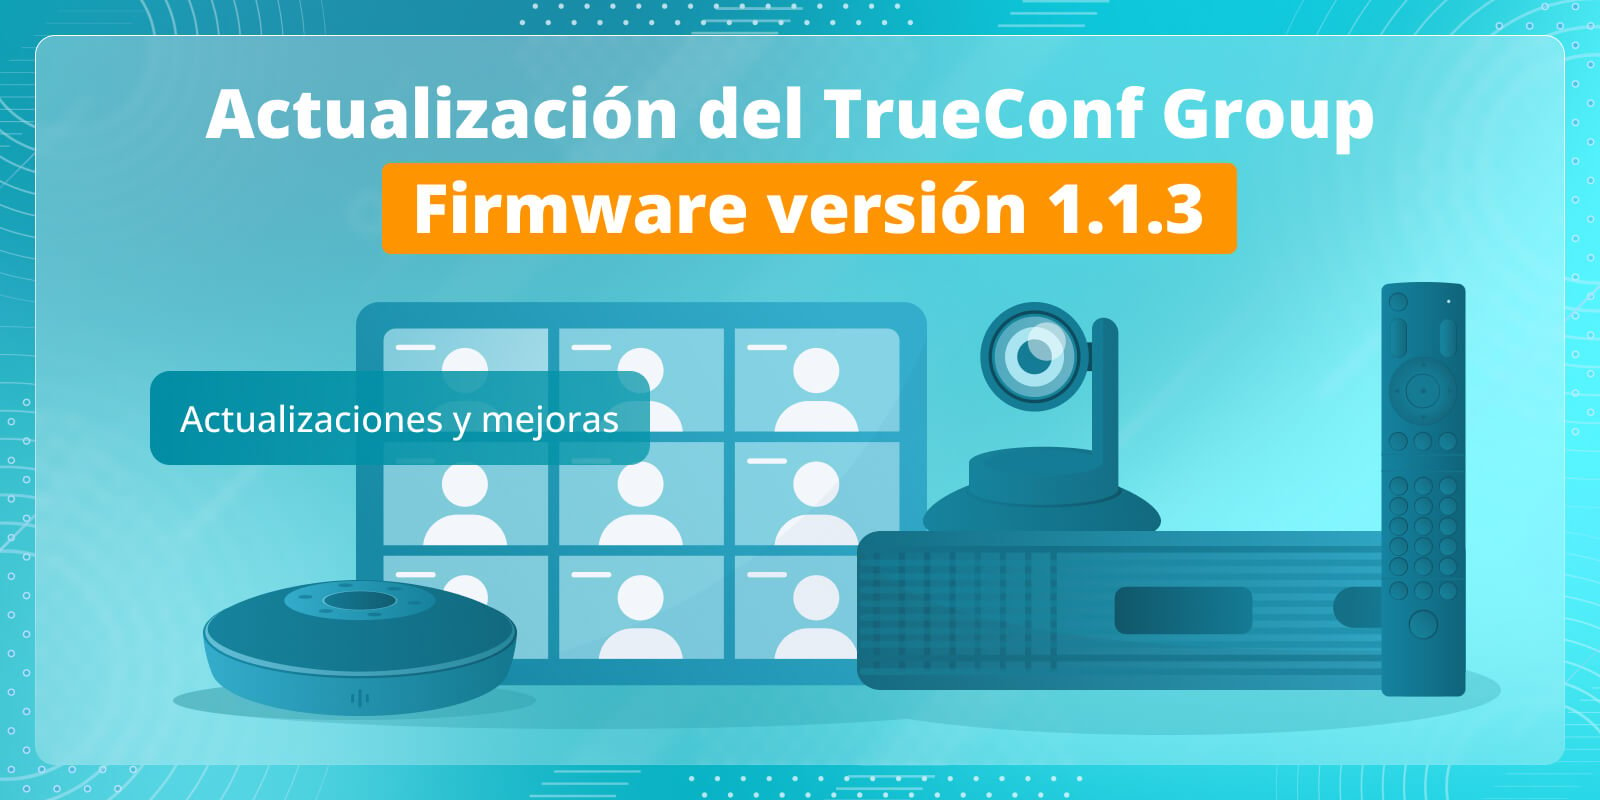 TrueConf Group 1.1.3: actualizaciones y mejoras 6